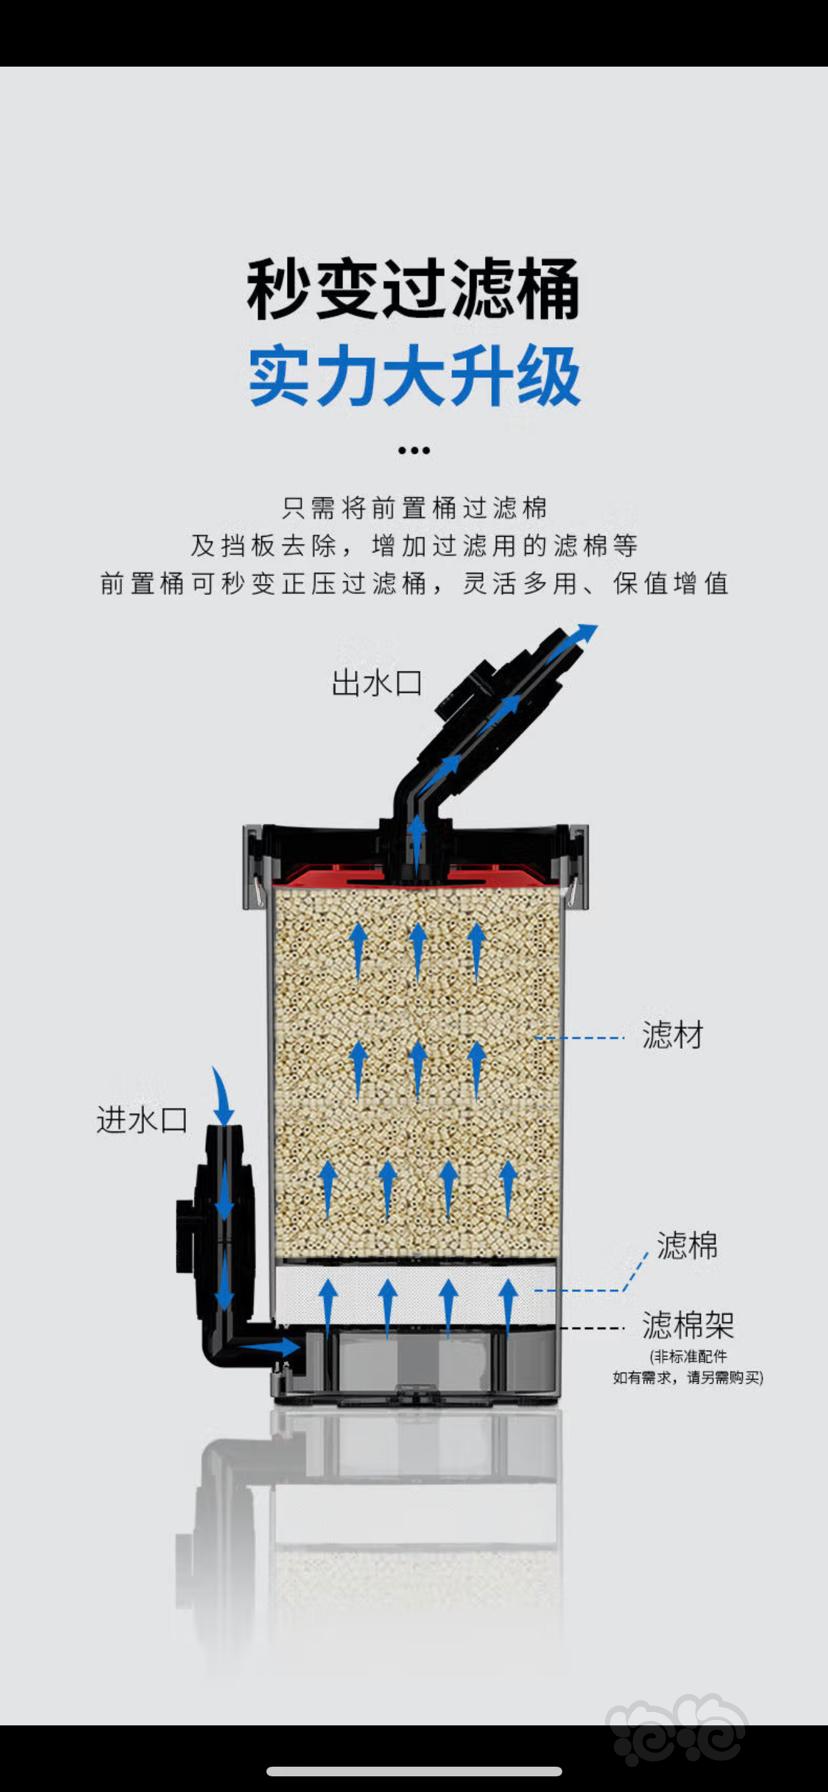 尼特利1号前置变动力桶水泵选择问题-图2